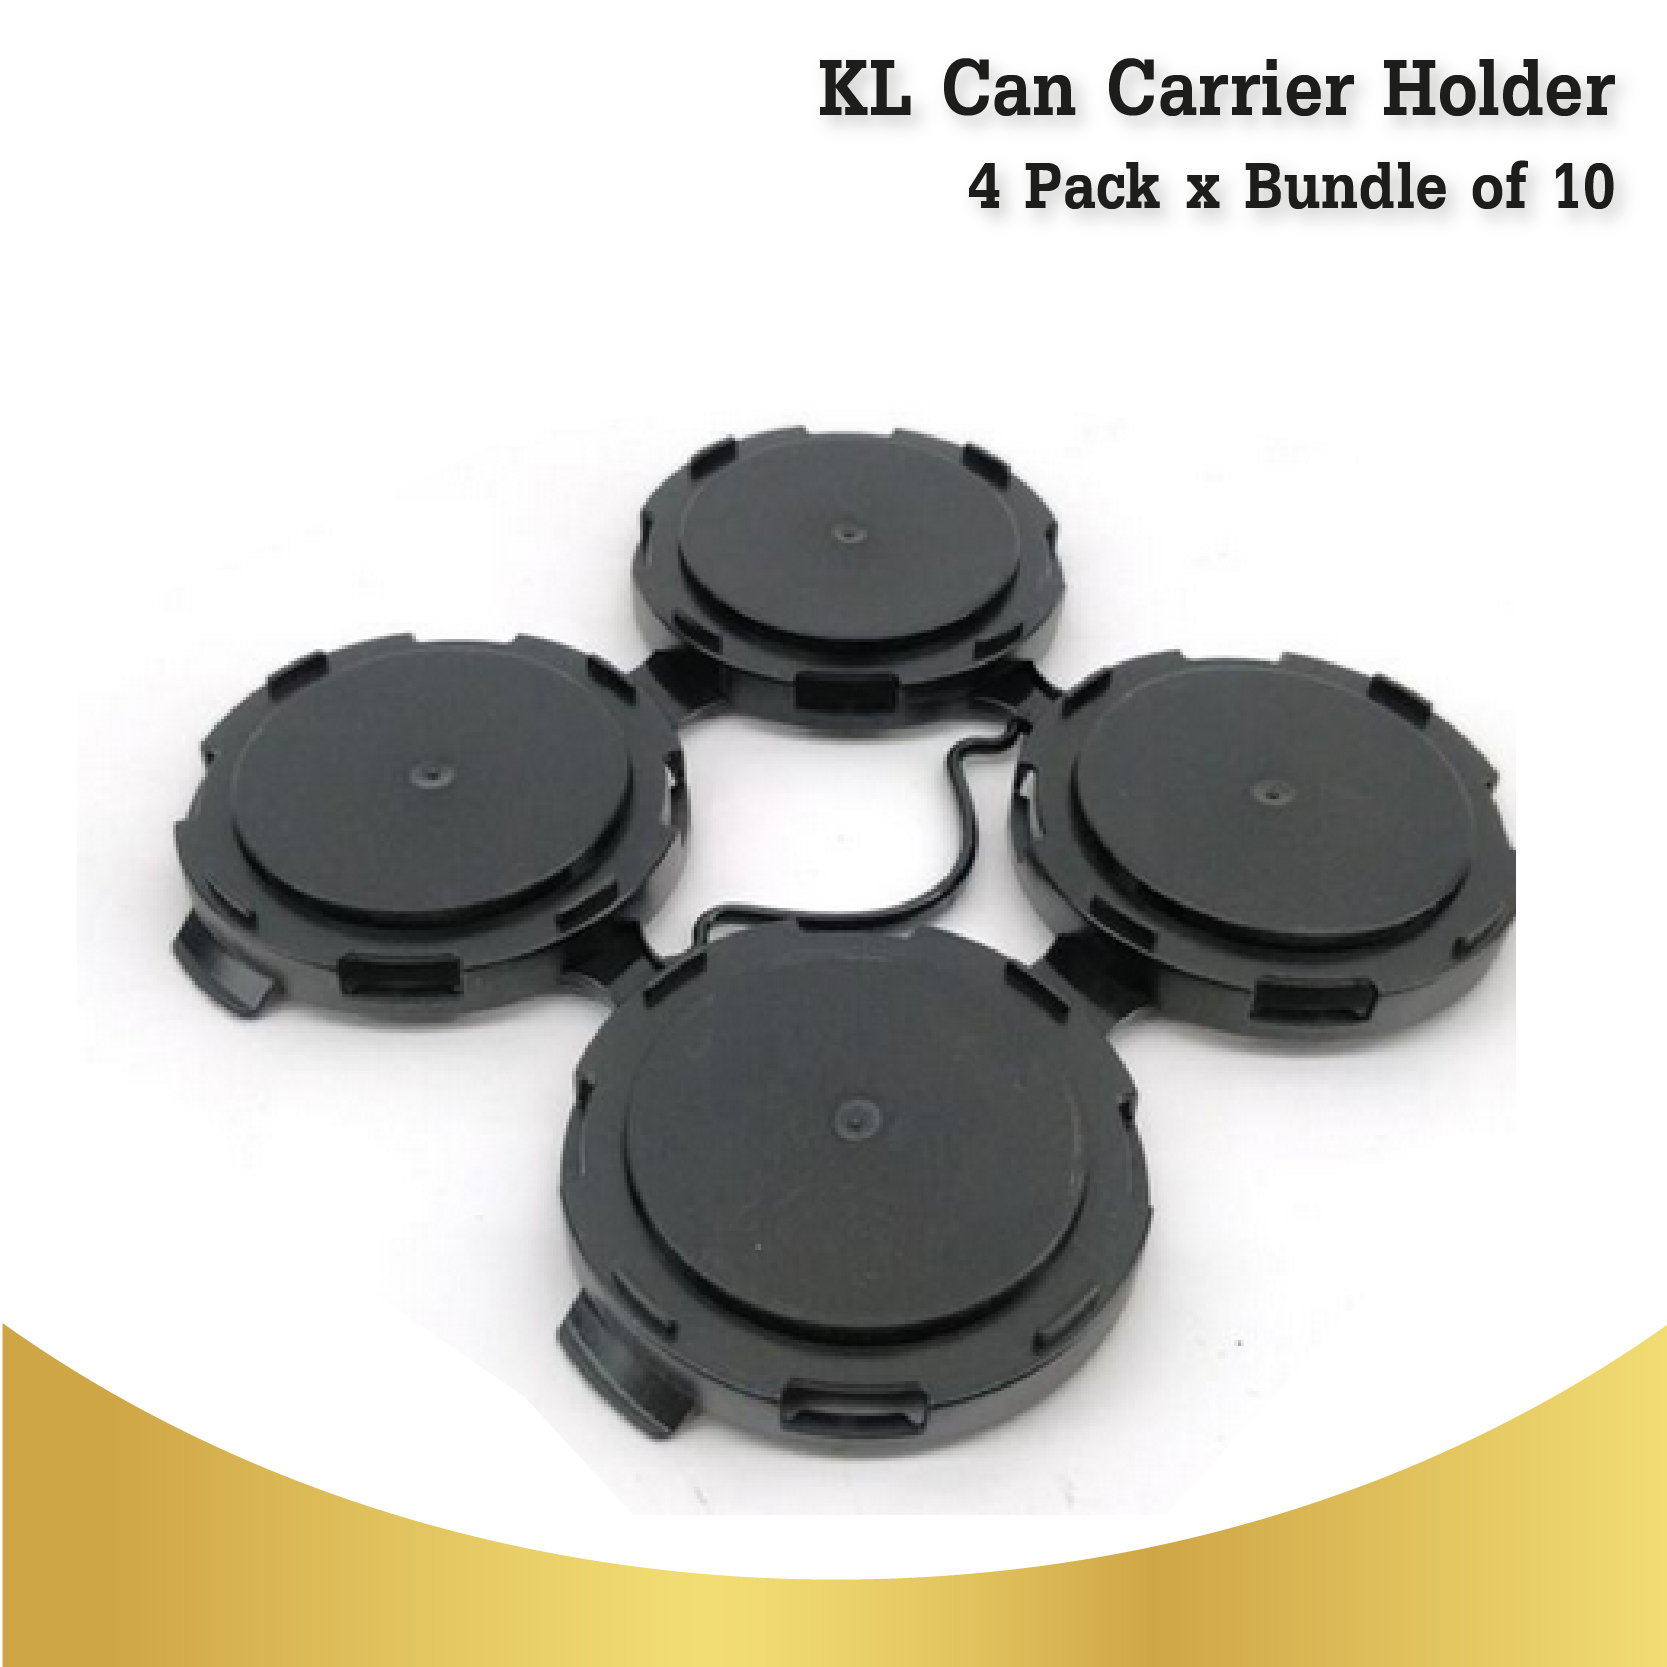 KL Can Carrier Holder - 4 Pack x Bundle of 10